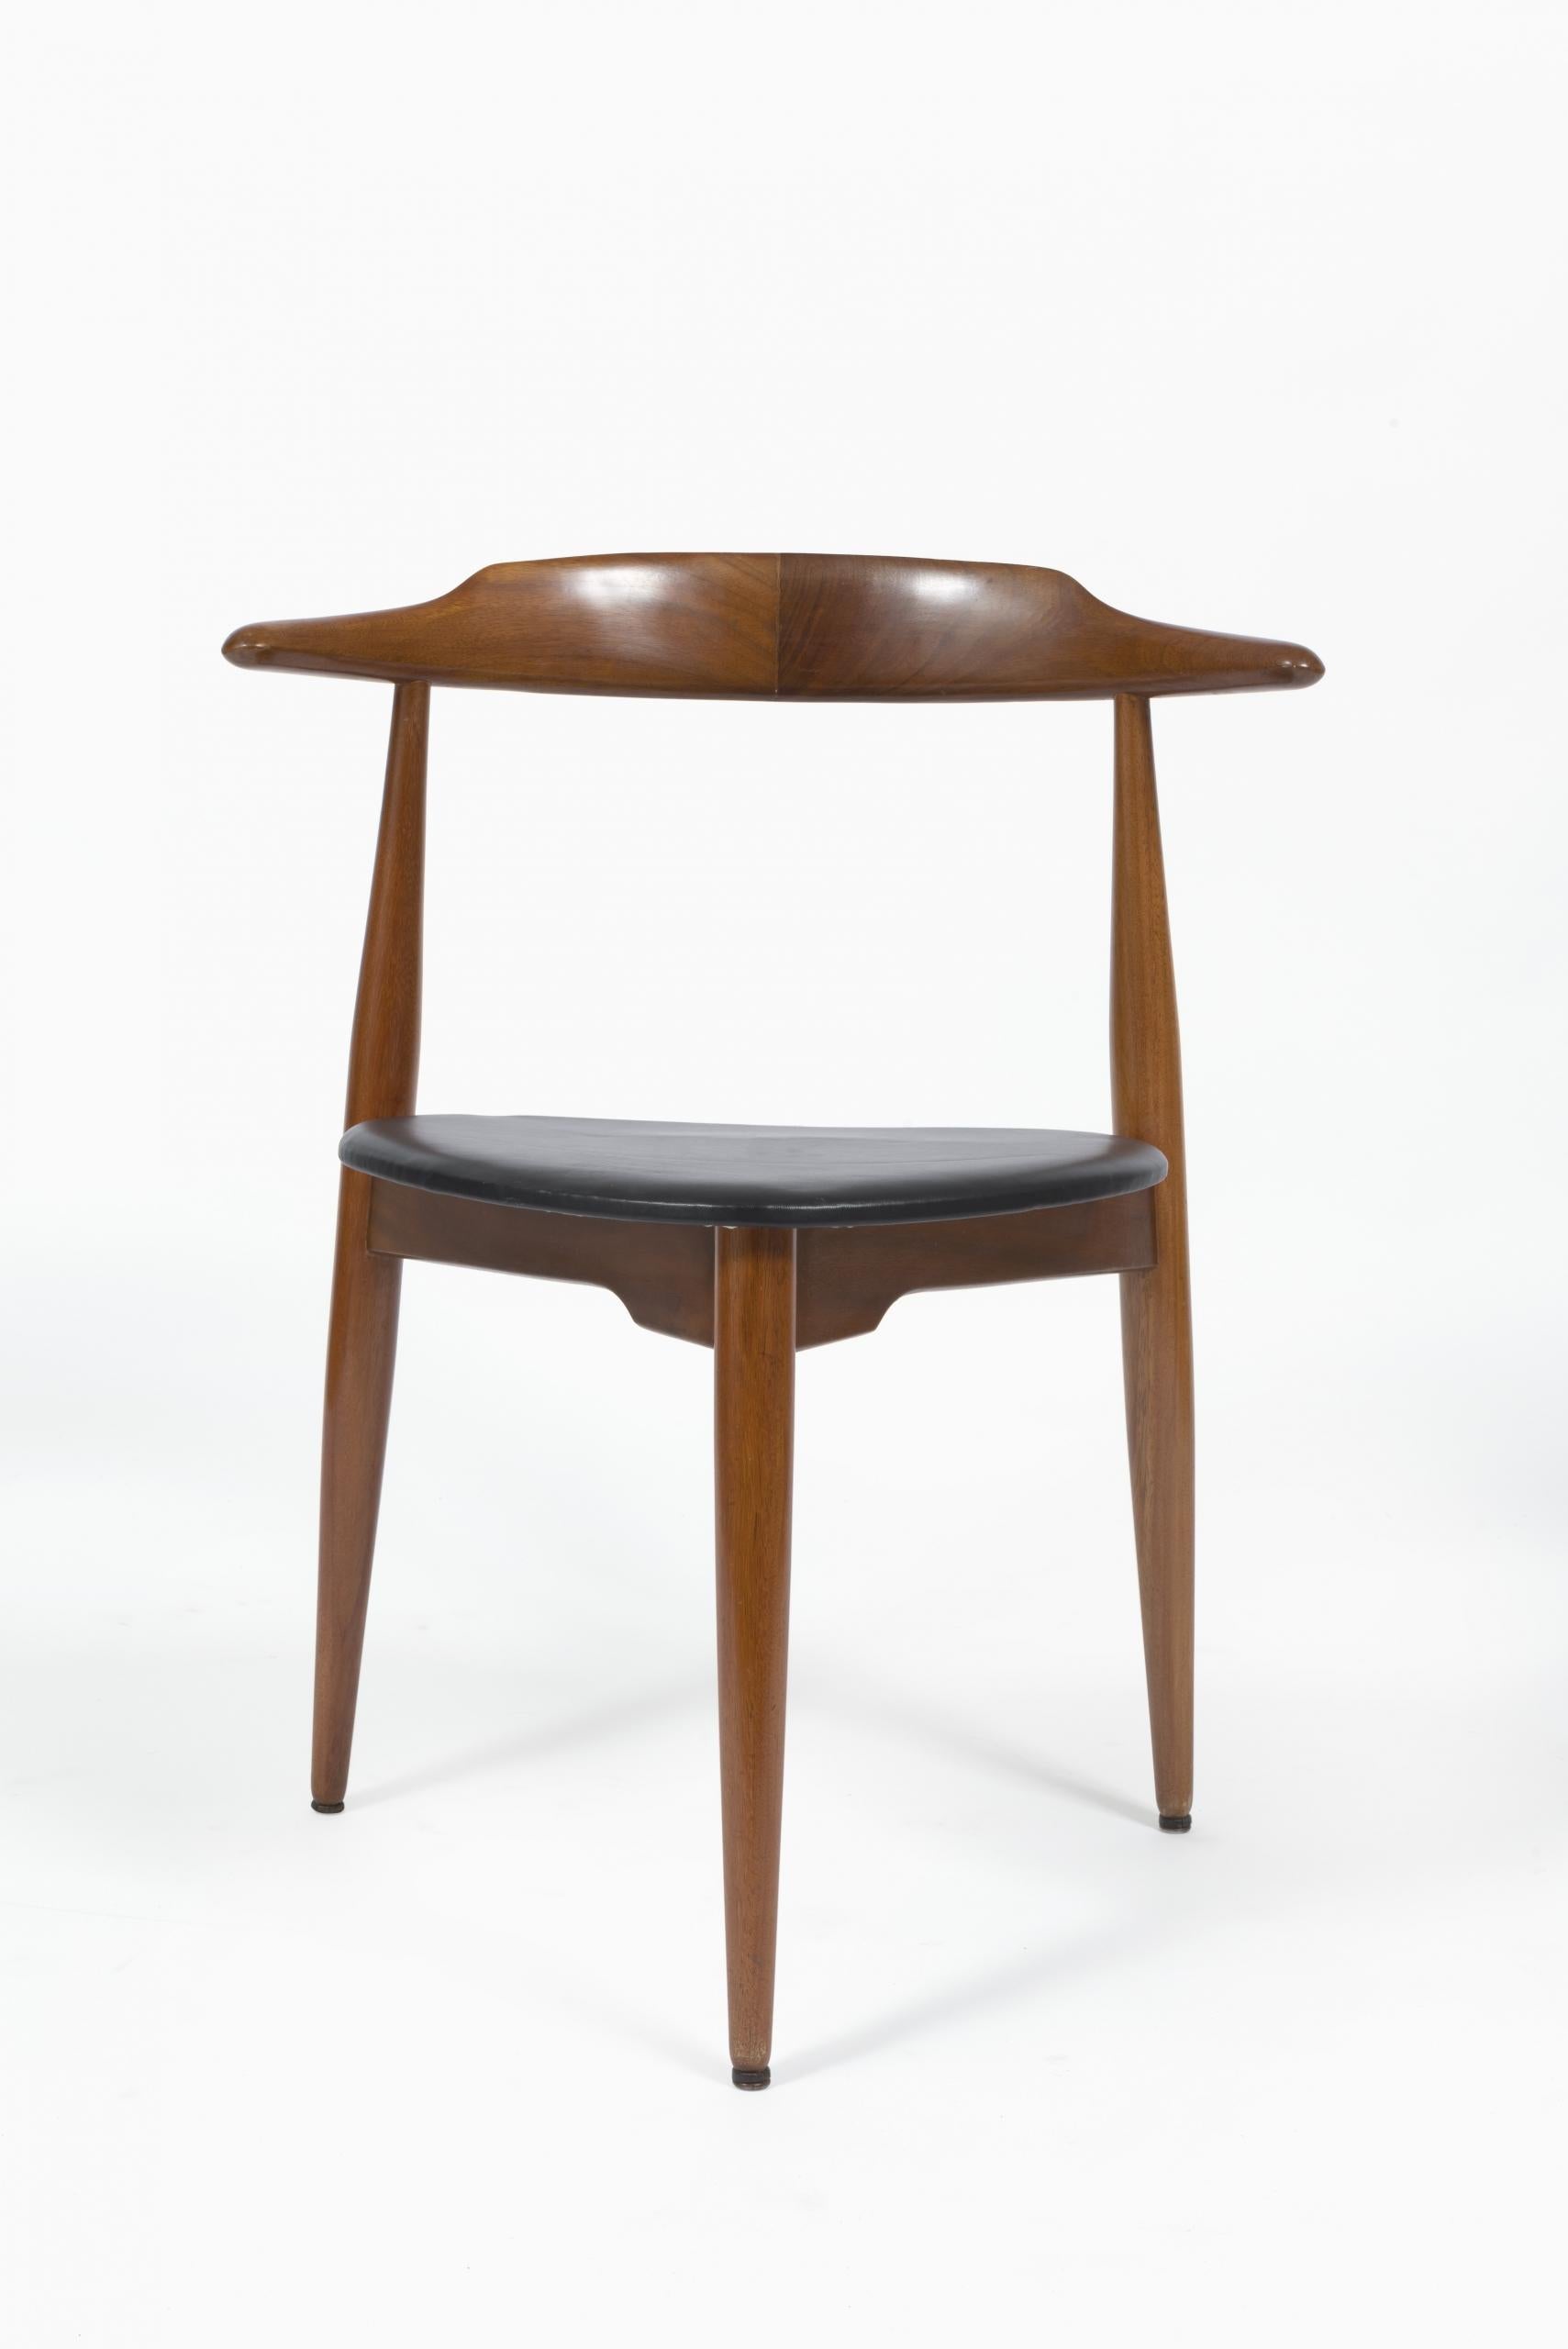 Modèle conçu à l’origine par Hans J. Wegner dans les années 1950, le FH4103 a été fabriqué par Fritz Hansen et vendu à Londres par Story’s of Kensington.

Construites en bois de hêtre, les chaises FH4103 sont également connues sous le nom de